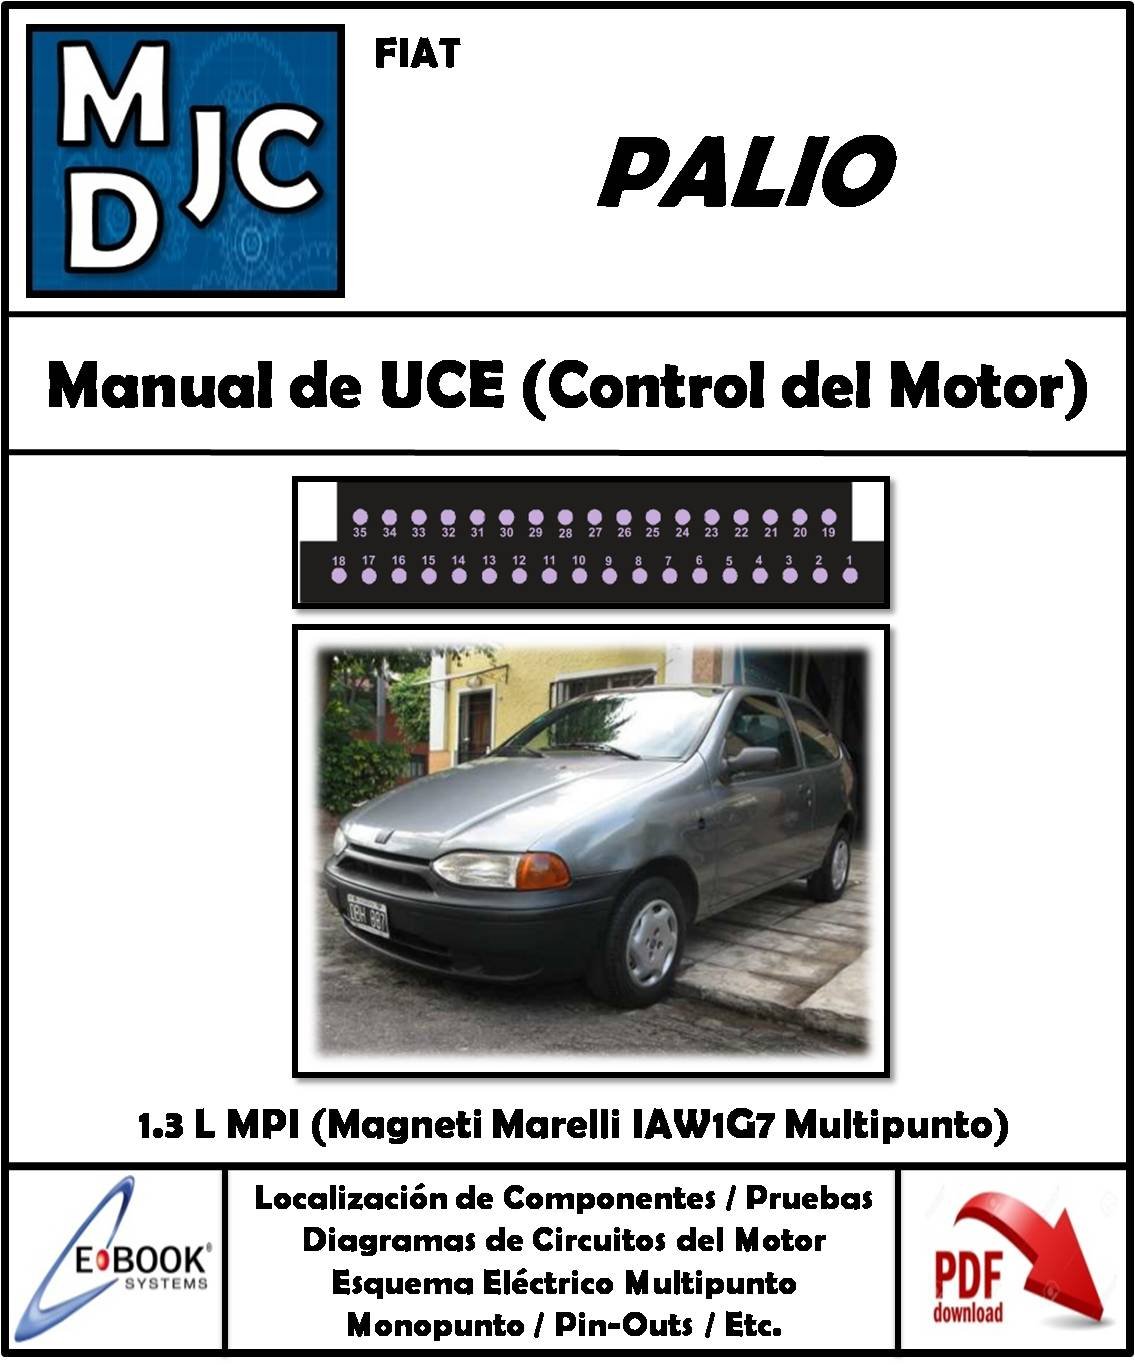 Fiat Palio 1.3 L MPI